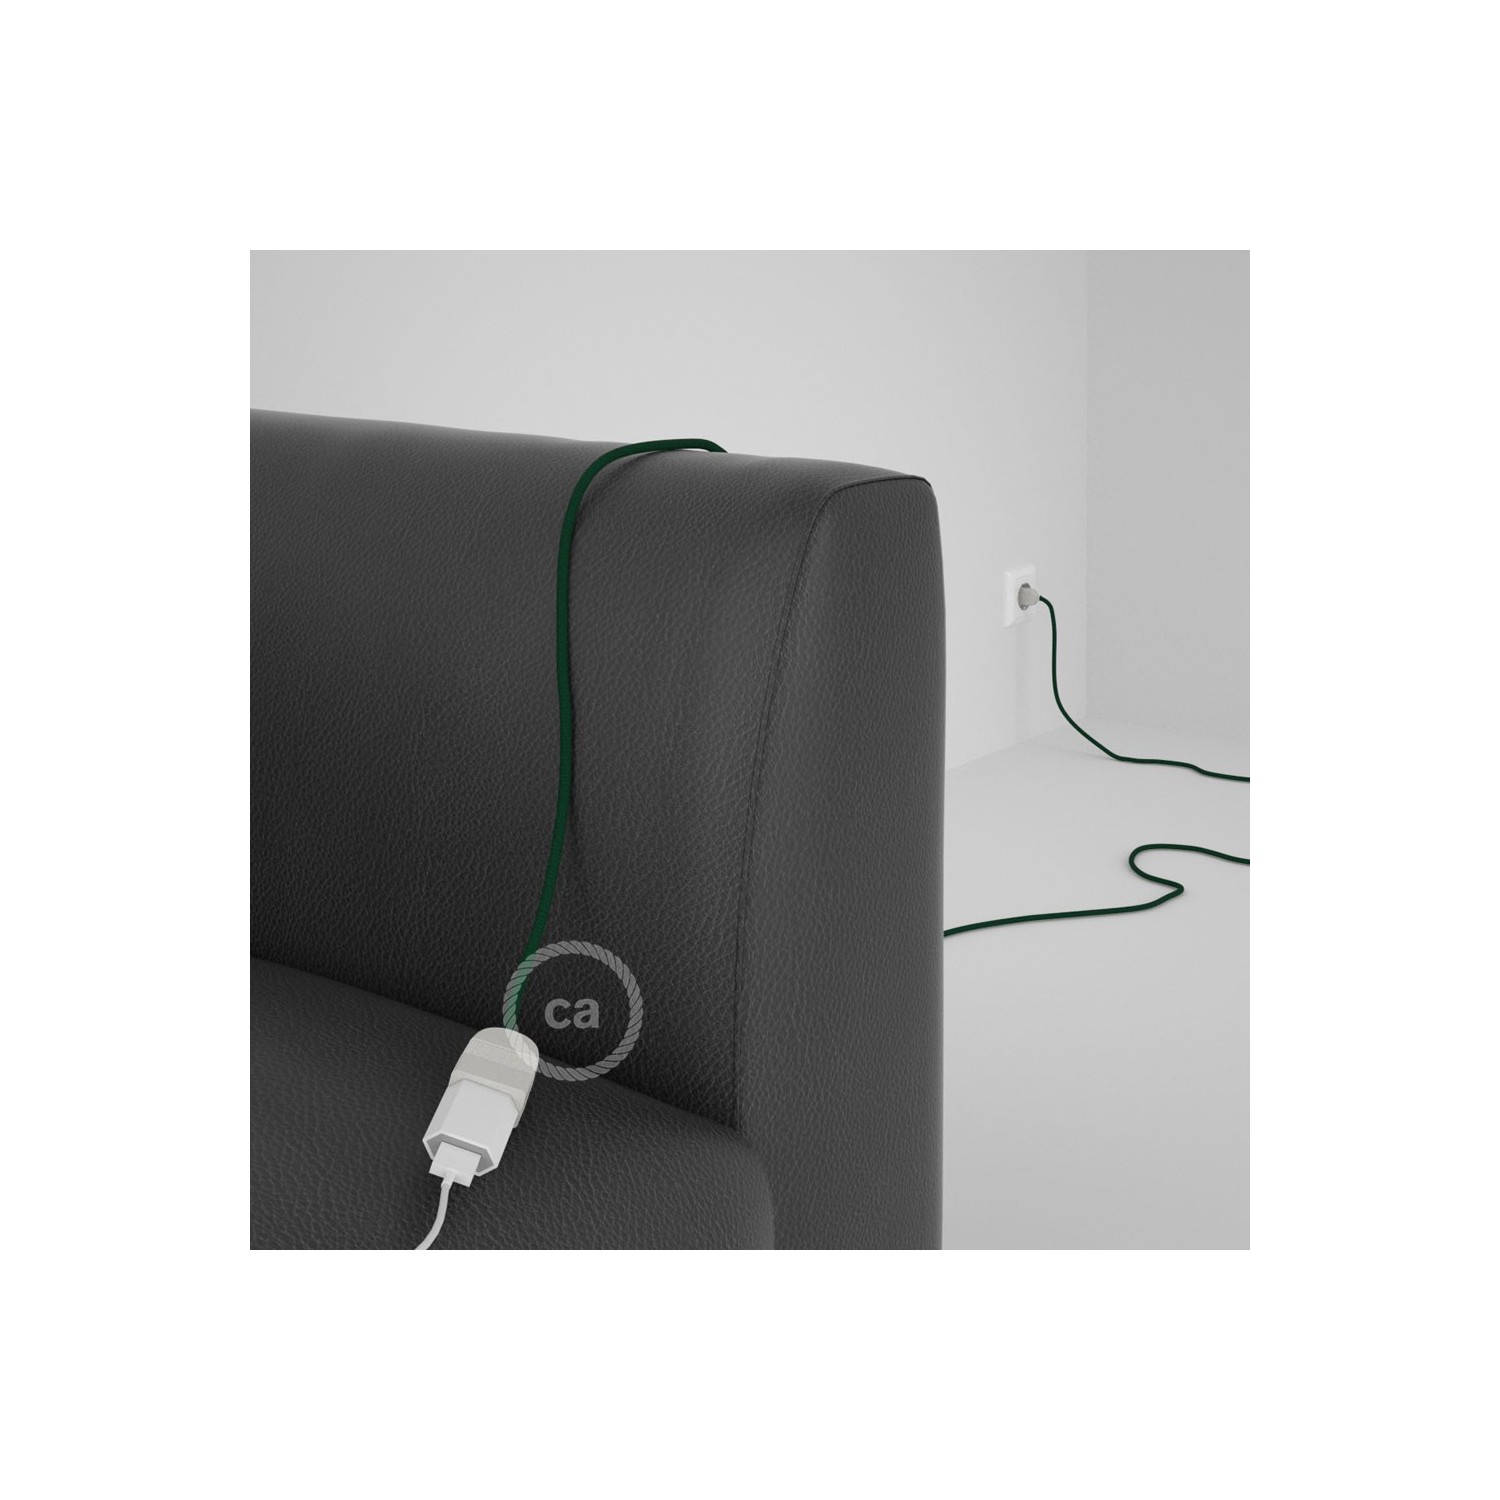 Podaljševalni kabel za napajanje (2P 10A) temno zelen rejon RM21 - Made in Italy